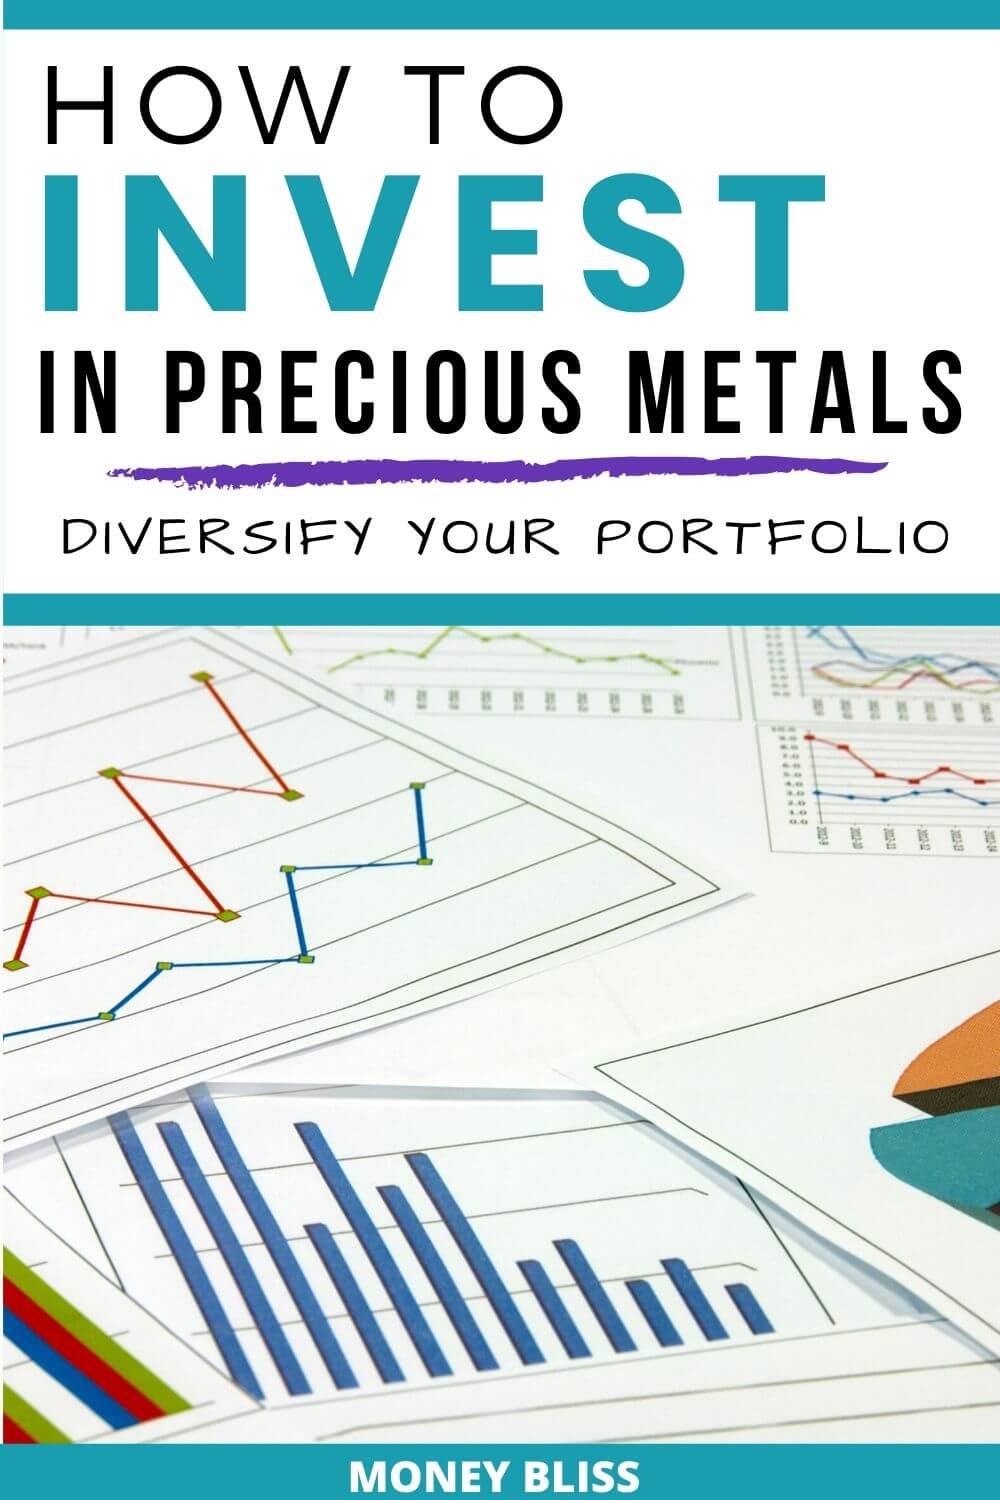 Aprenda a invertir en metales preciosos para diversificar su cartera